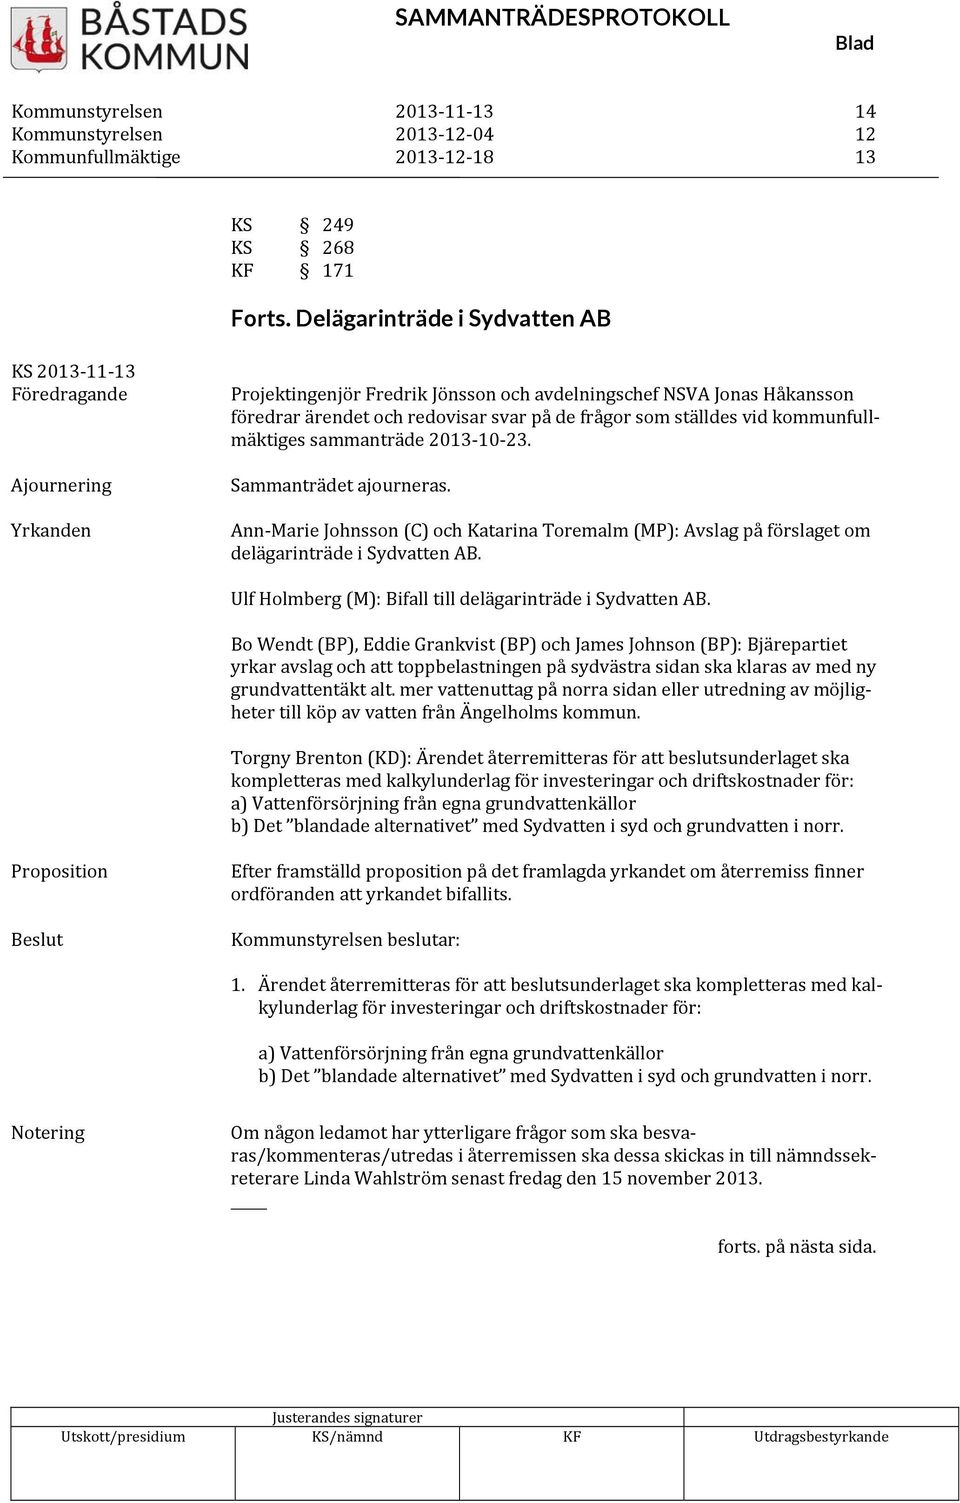 som ställdes vid kommunfullmäktiges sammanträde 2013 10 23. Sammanträdet ajourneras. Ann Marie Johnsson (C) och Katarina Toremalm (MP): Avslag på förslaget om delägarinträde i Sydvatten AB.